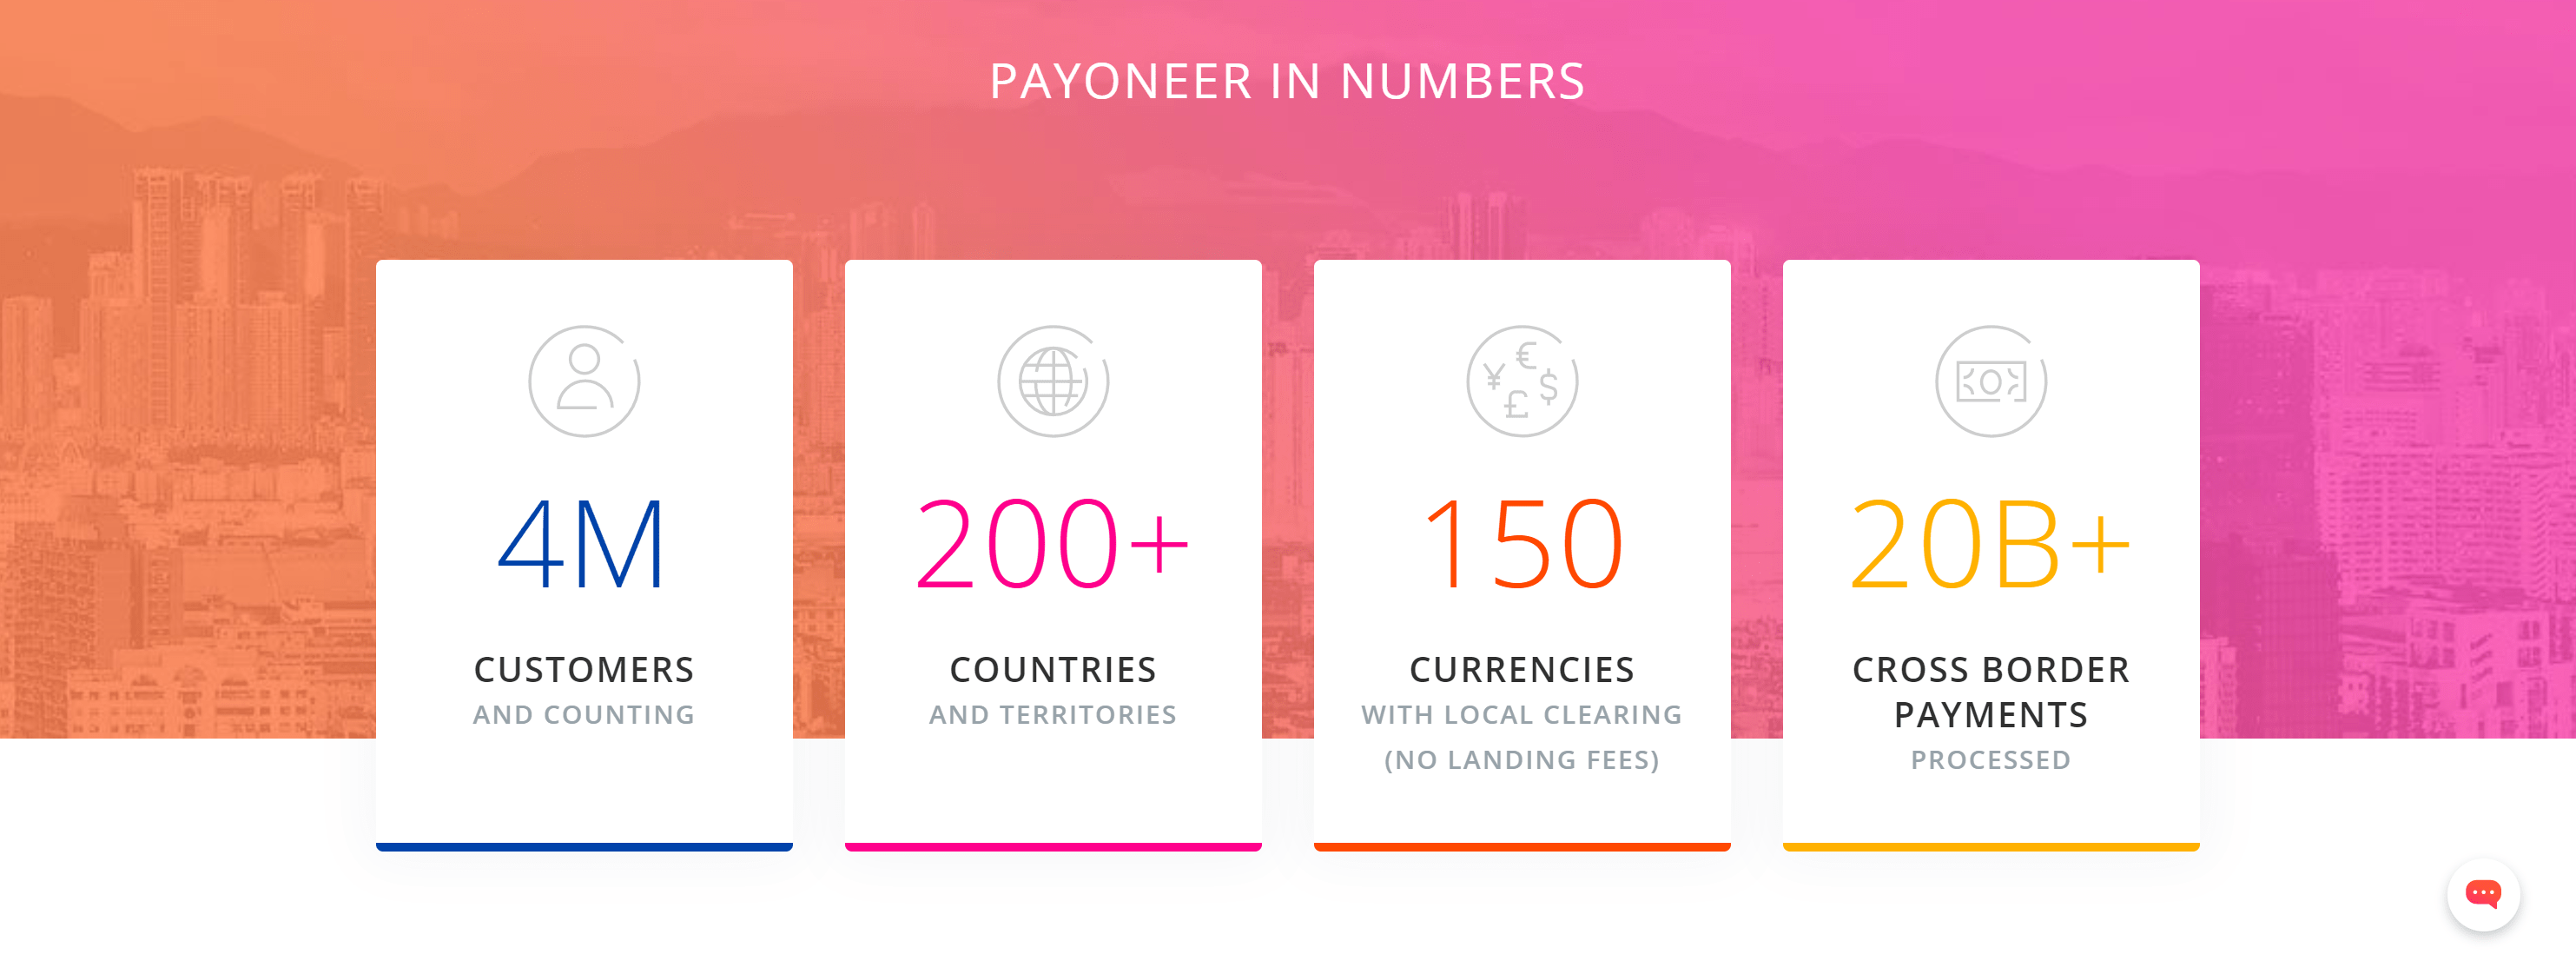 Paynoeer in numbers- Payoneer review